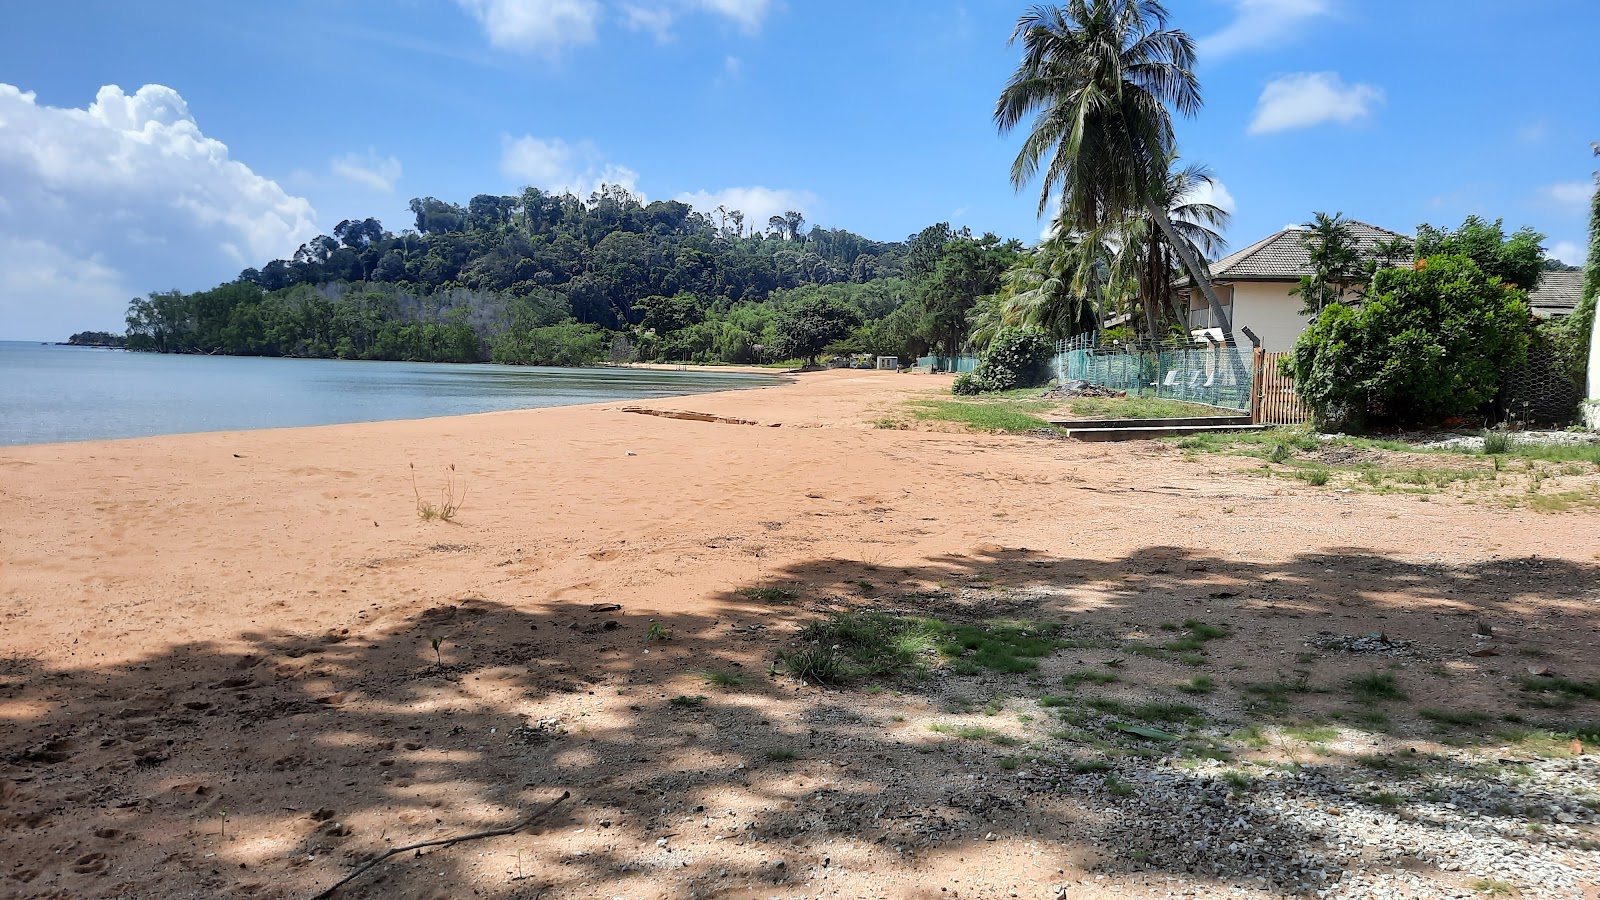 Zdjęcie Cermin Beach - popularne miejsce wśród znawców relaksu